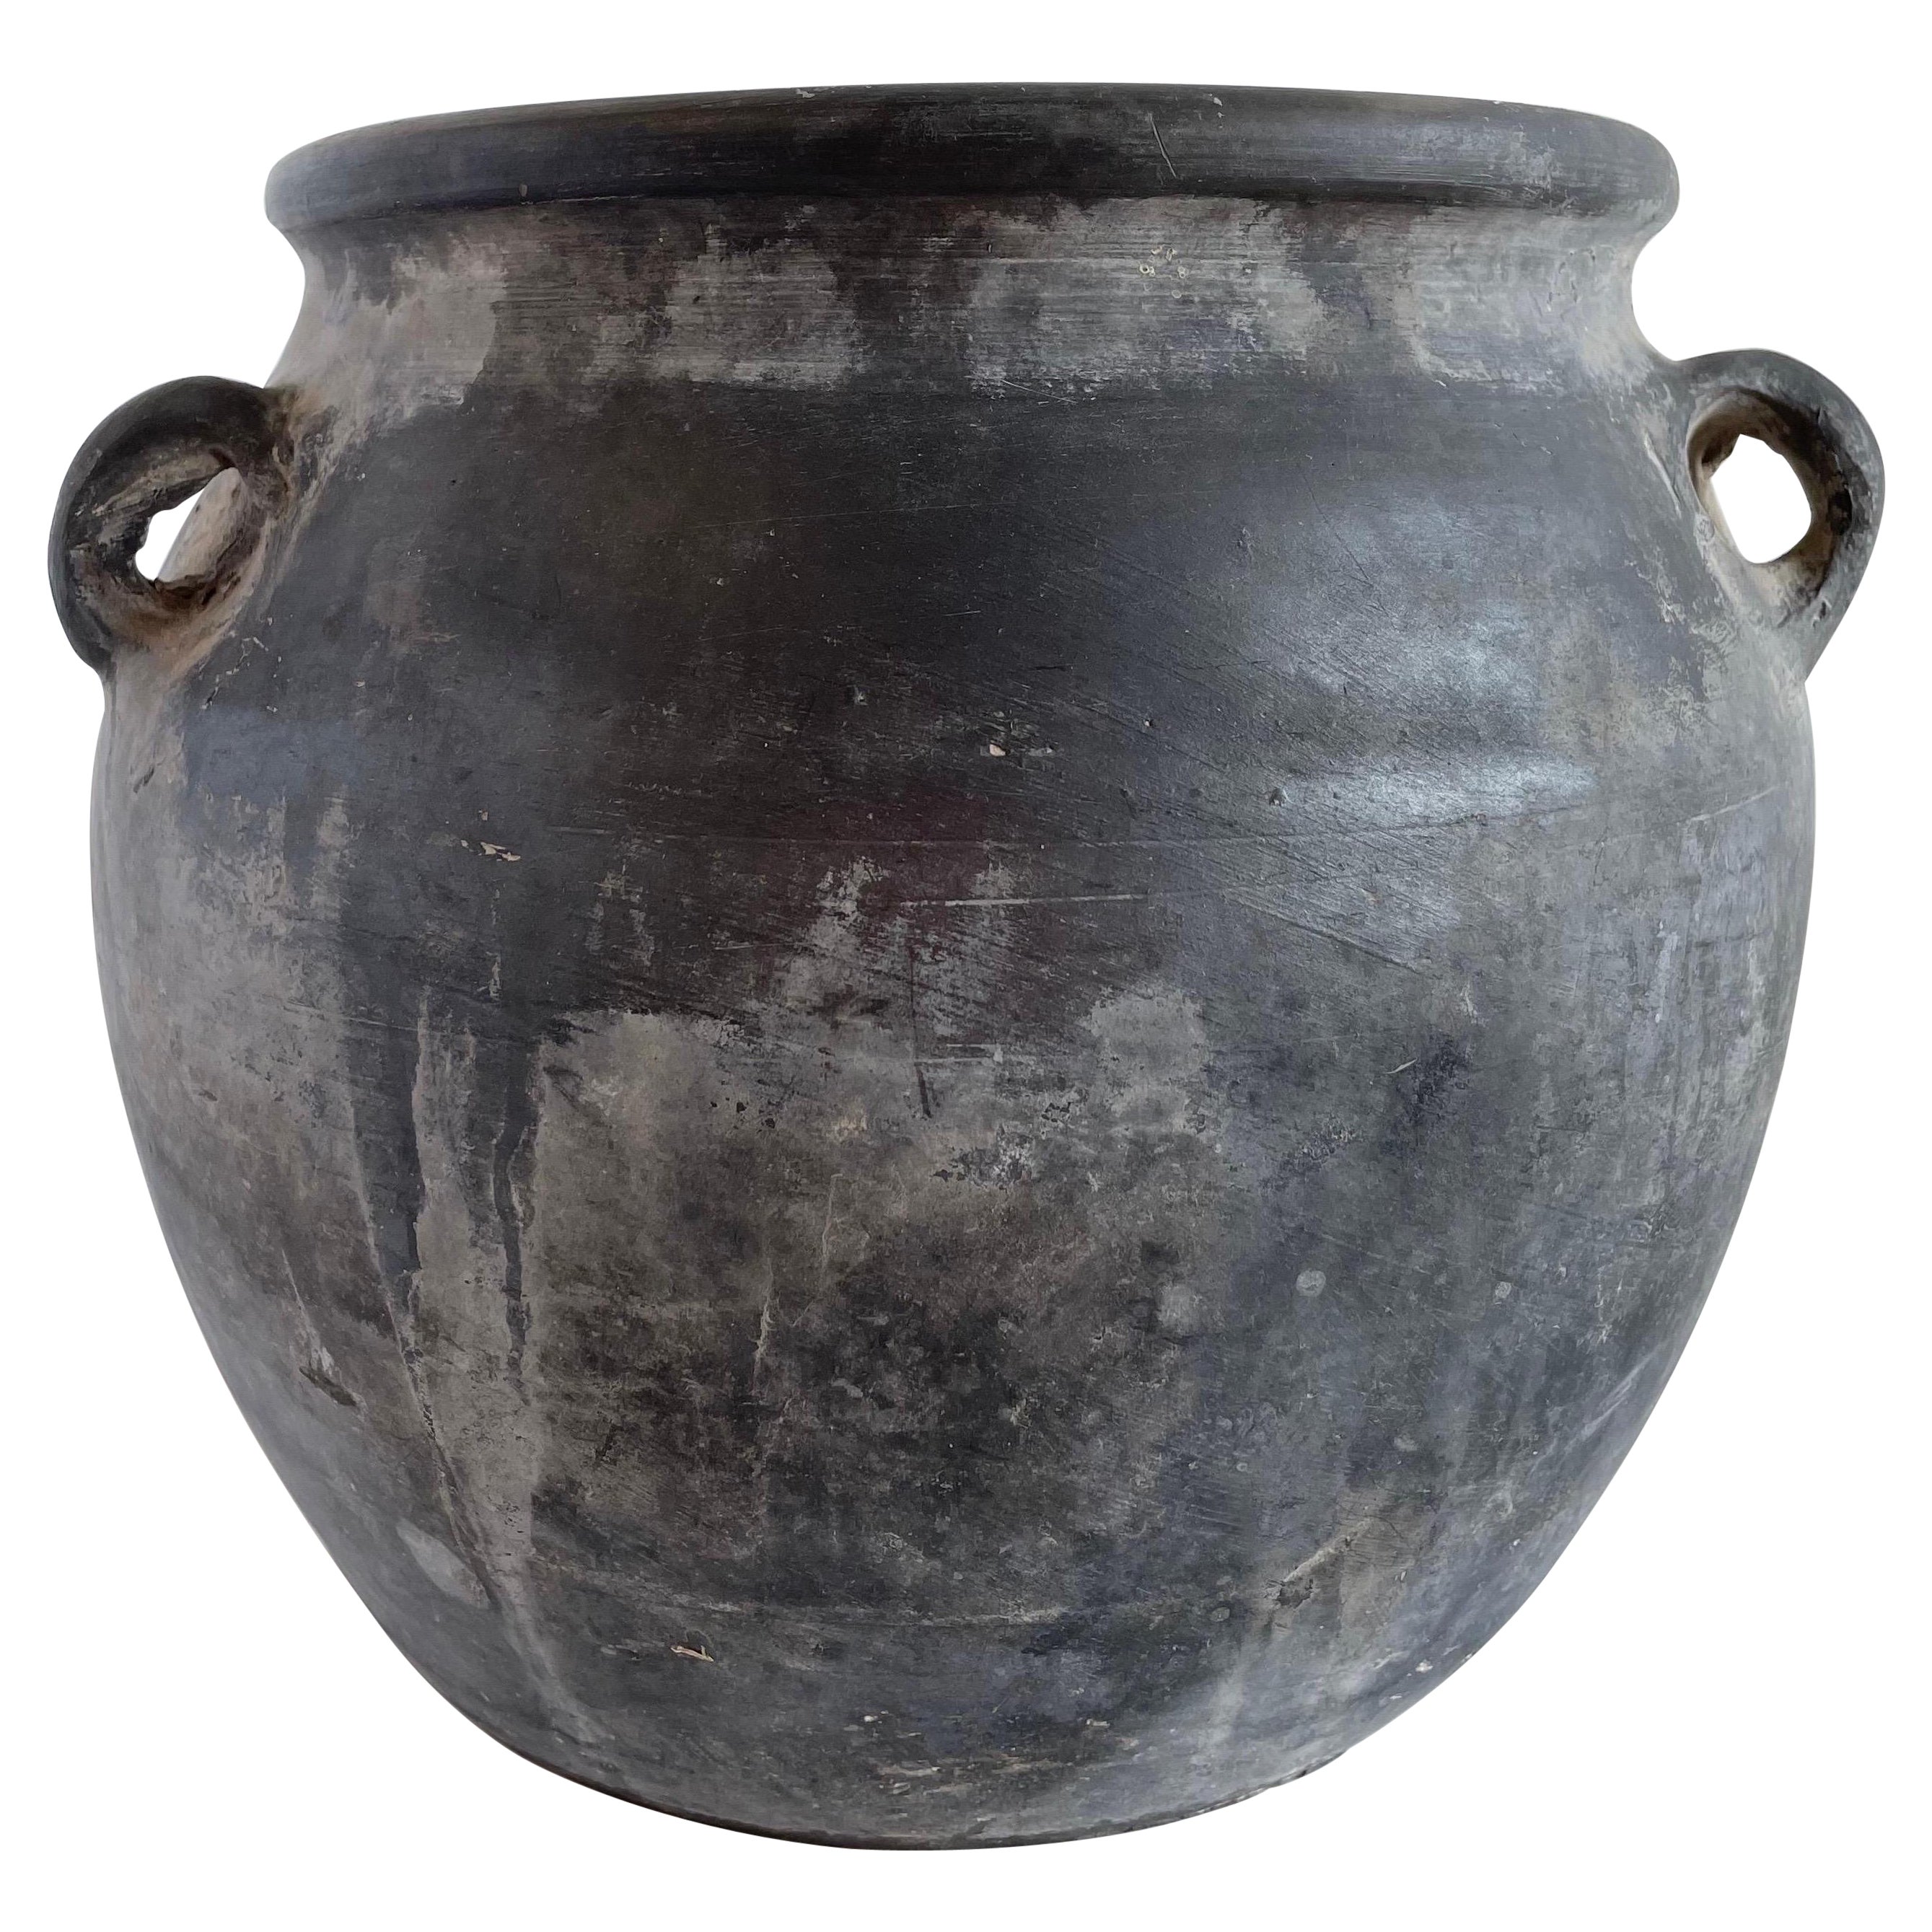 Vintage Clay Pot Medium Size